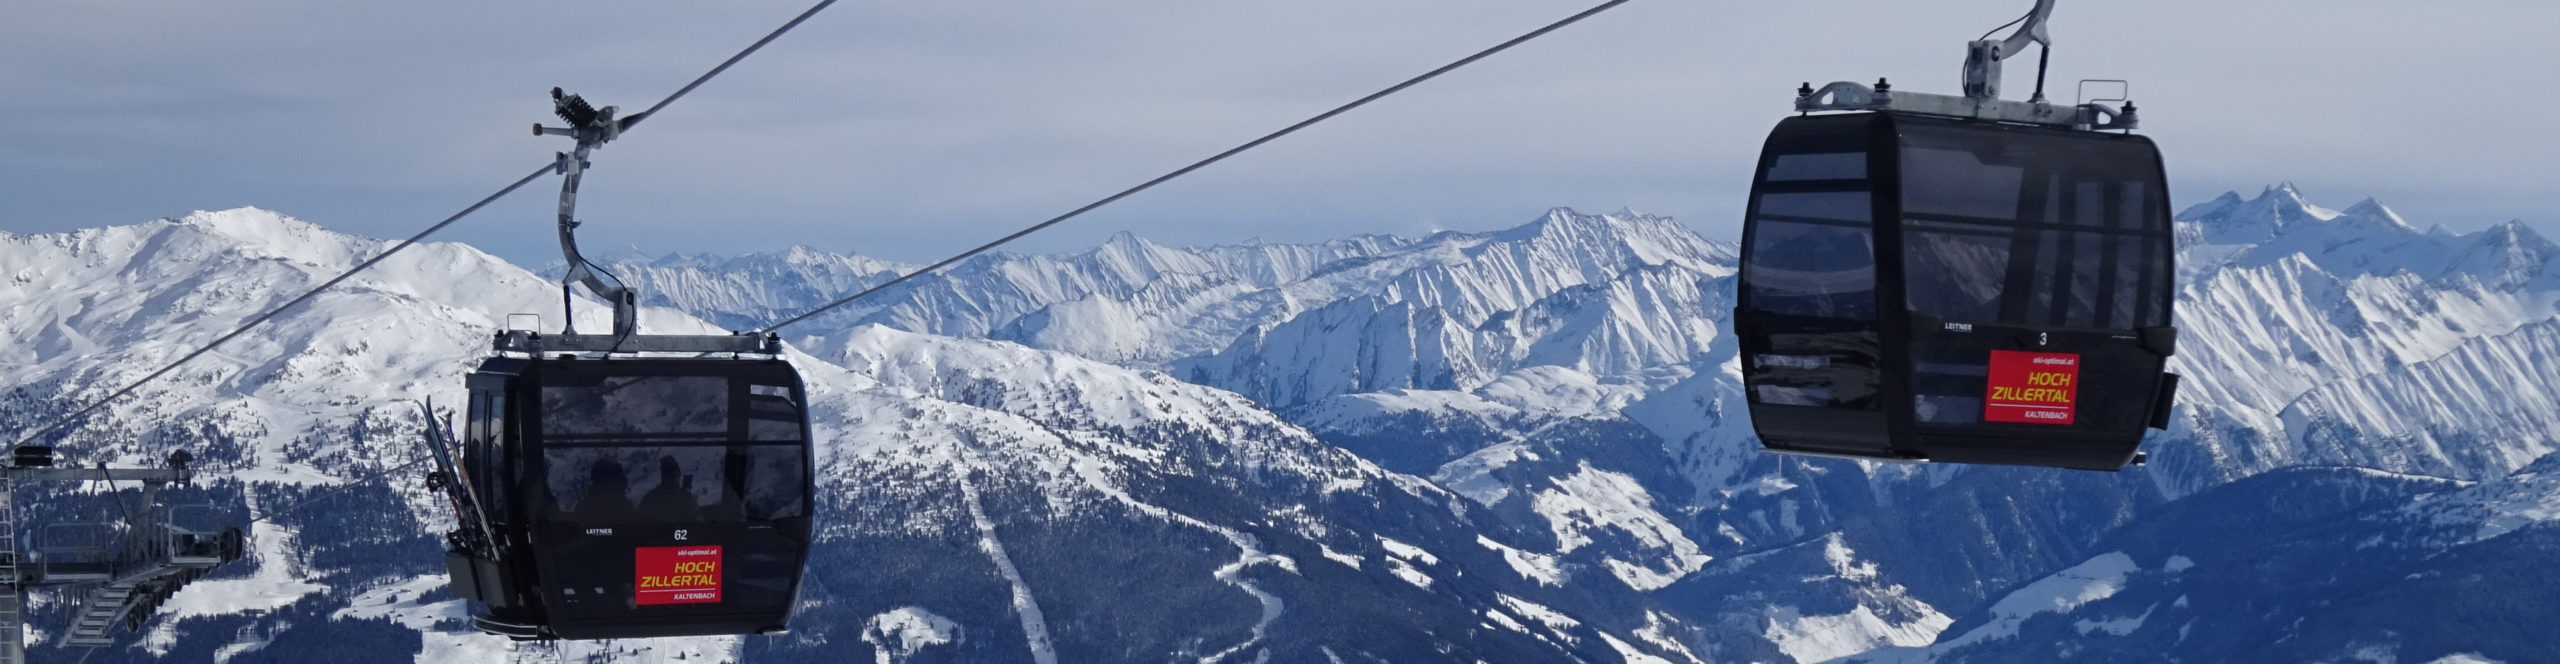 ZILLERTAL – verlängertes Skiwochenende mit 4 Skitagen – in den Faschingsferien – Hotel in Strass – auch ab Würzburg 